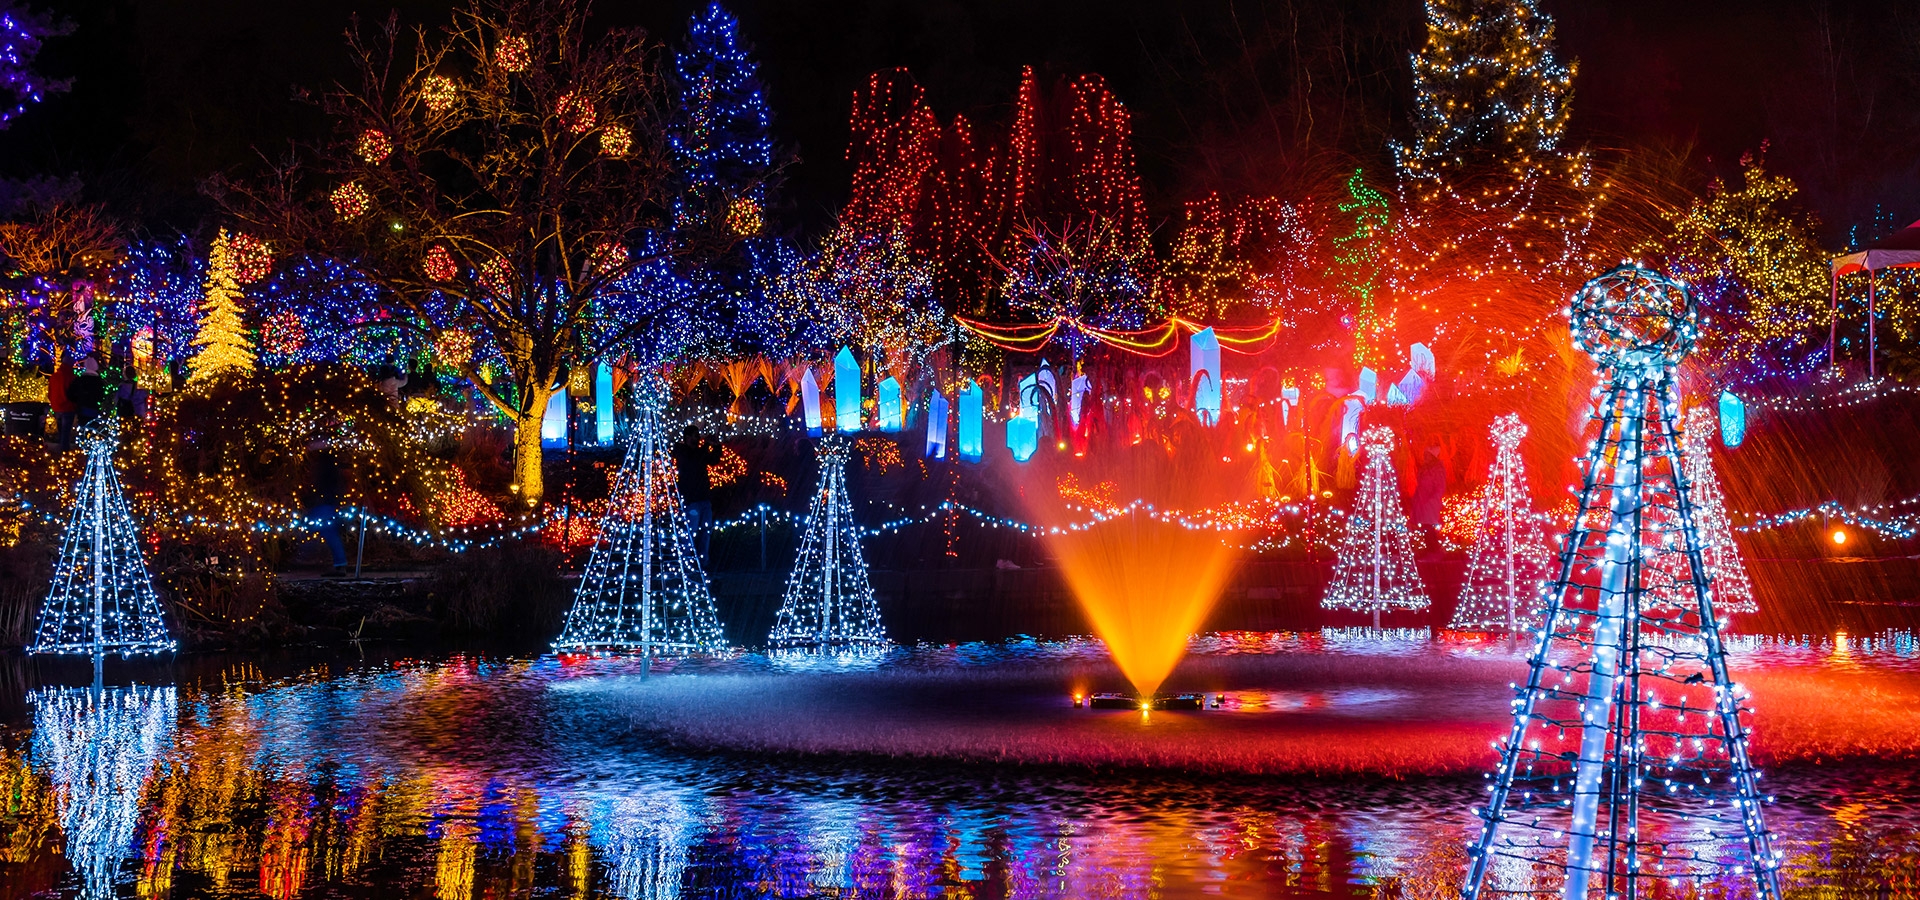 Het park vlakbij Capilano Suspension Bridge is sfeervol verlicht met kerst.